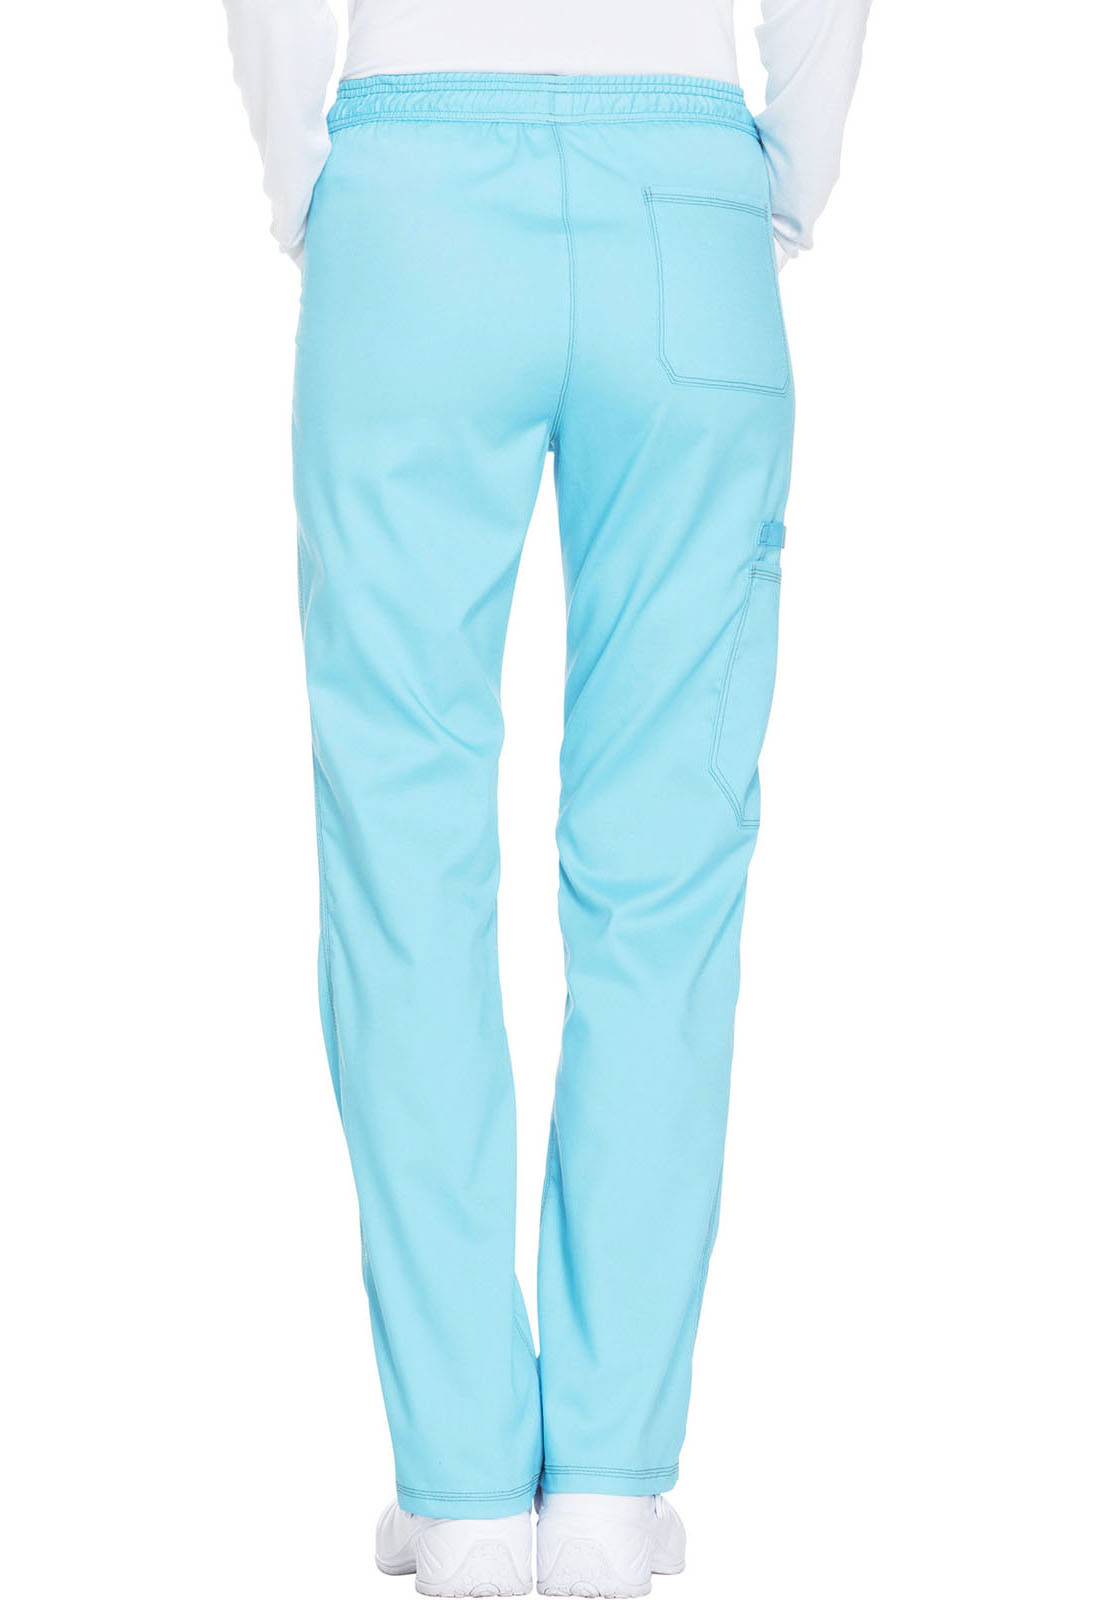 Turquoise Mid Rise Straight Leg Women's Petite Drawstring Pants DK106P -  The Nursing Store Inc.